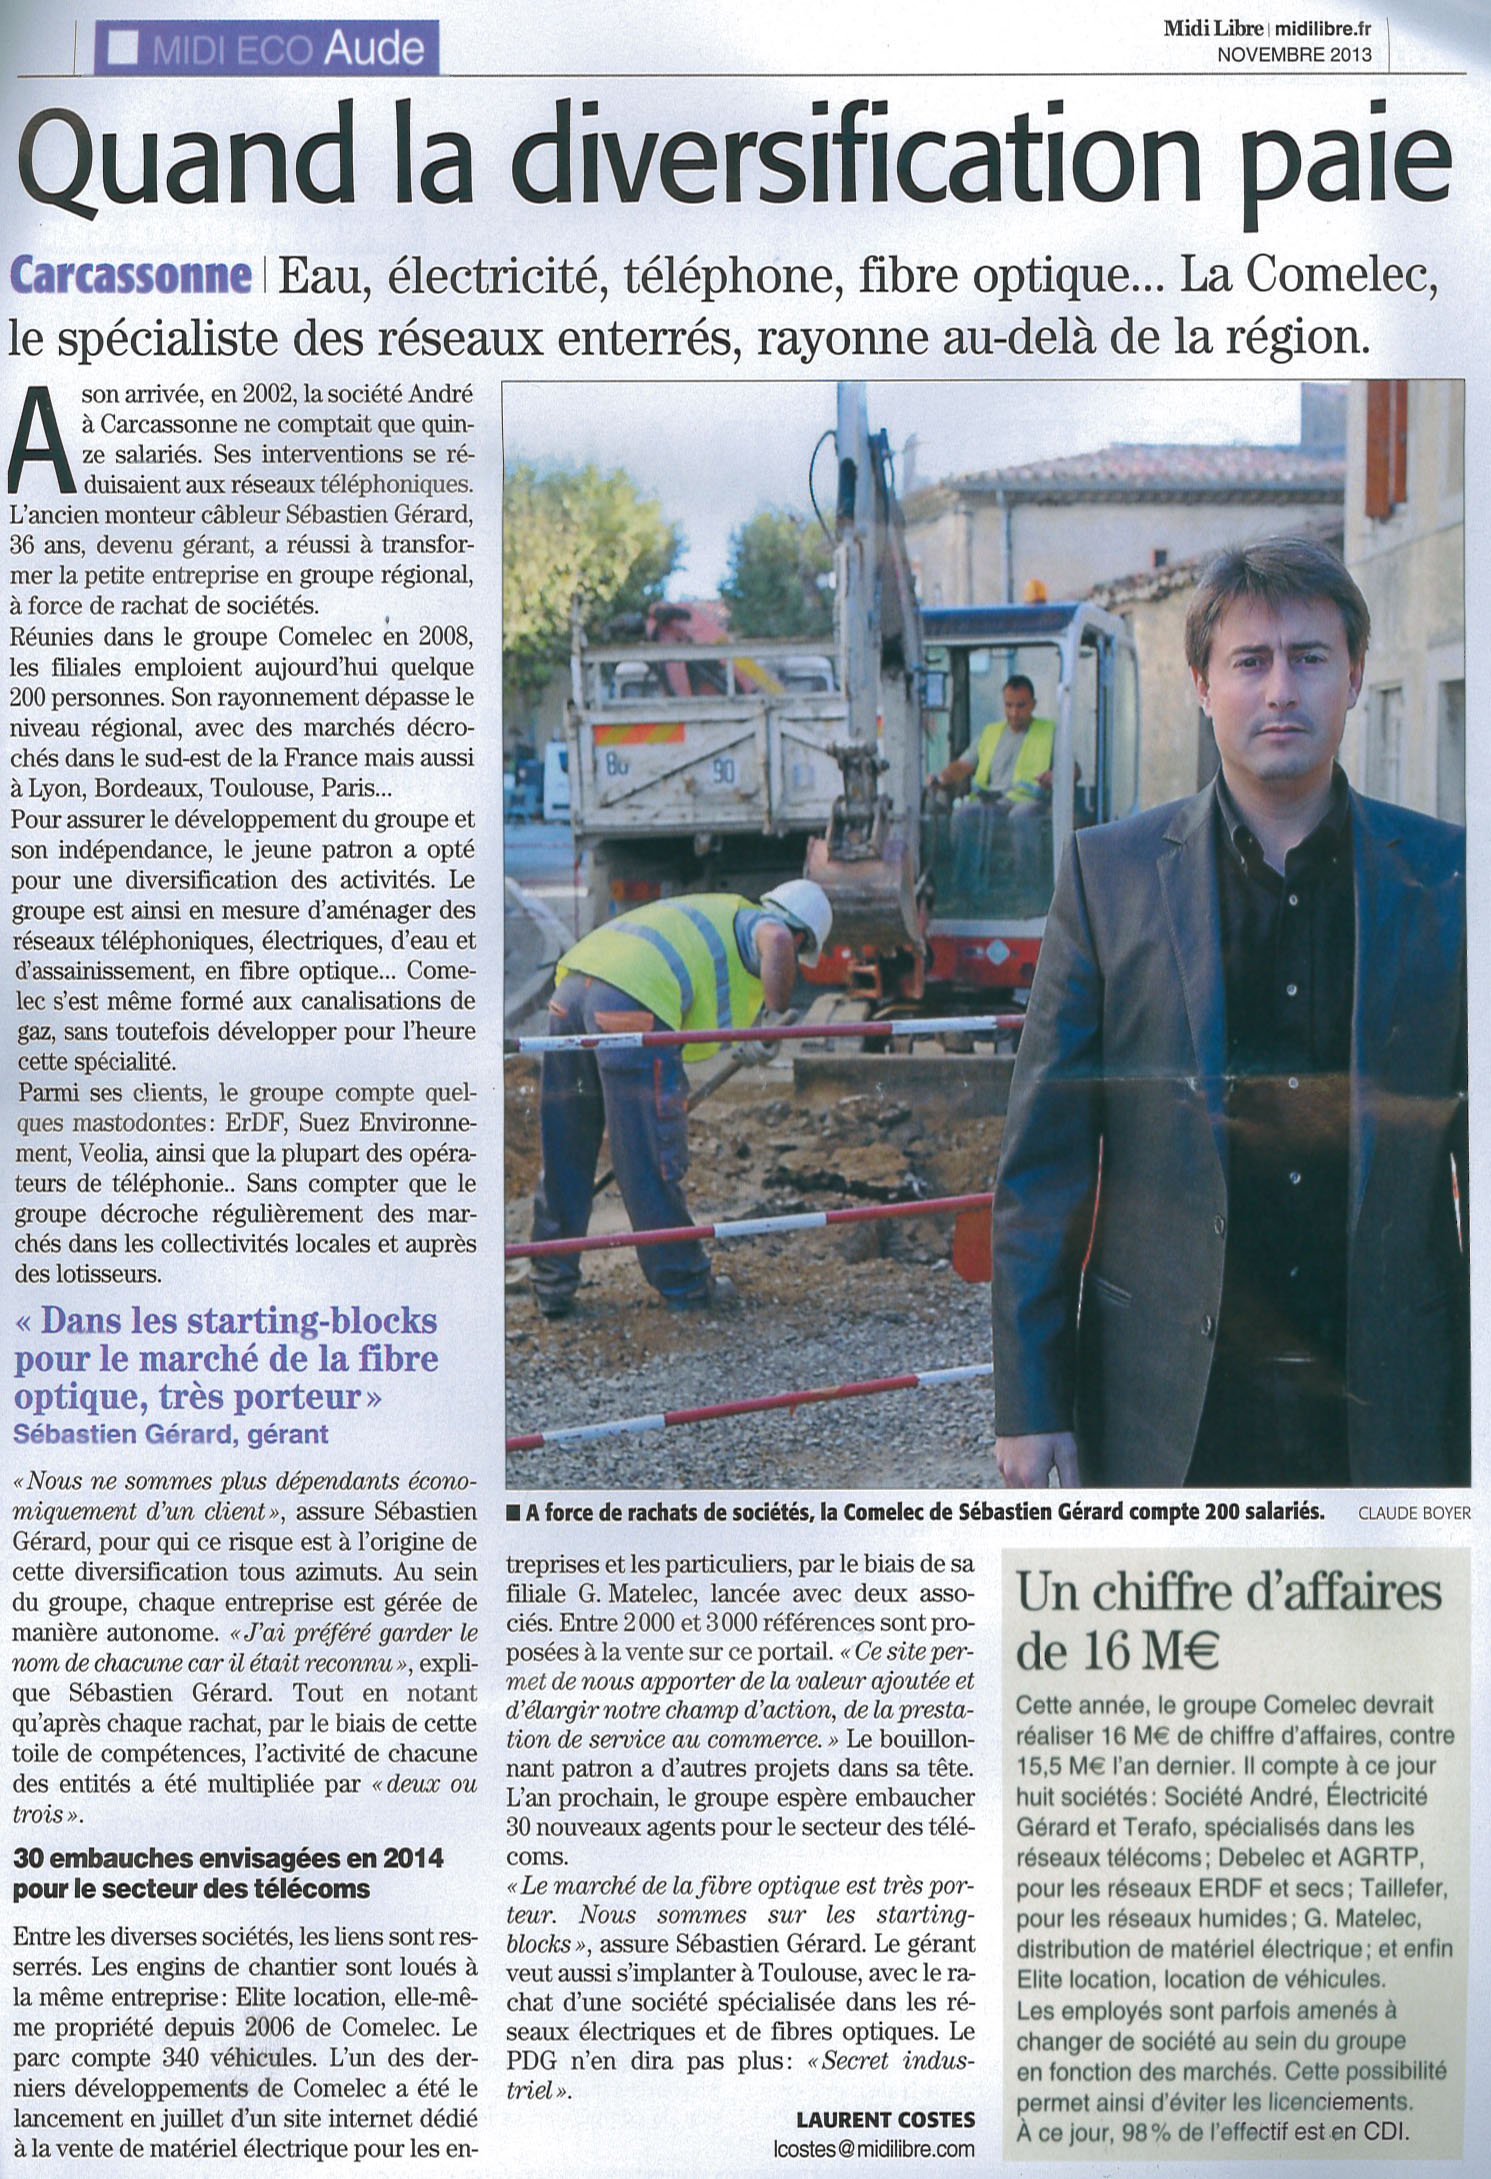 Article Midi Libre sur le Groupe COMELEC - usc 2013